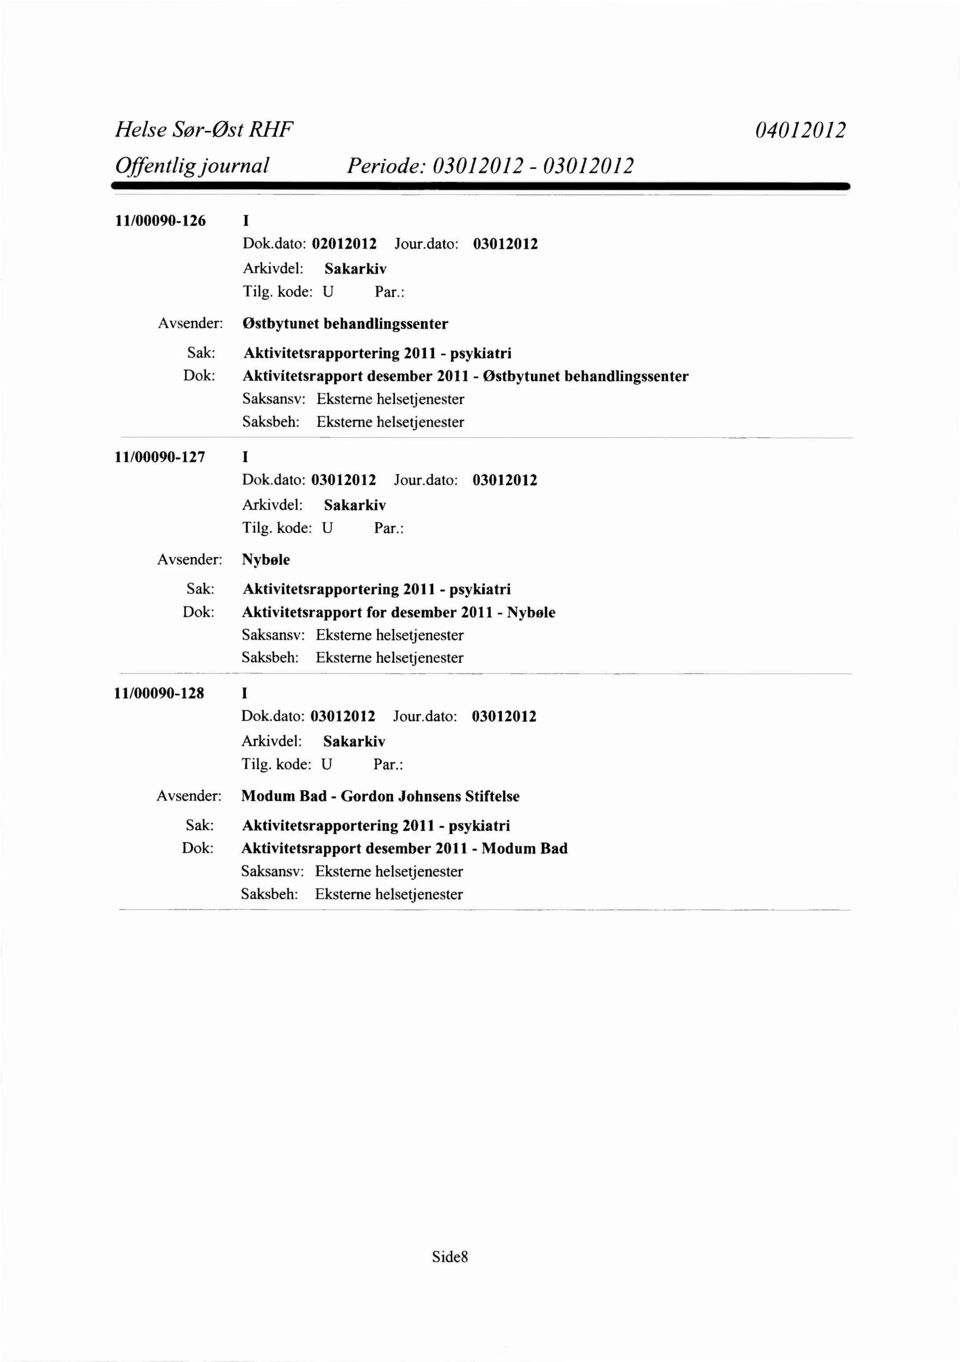 Aktivitetsrapportering 2011 - psykiatri Dok: Aktivitetsrapport for desember 2011 - Nybøle 11/00090-128 I